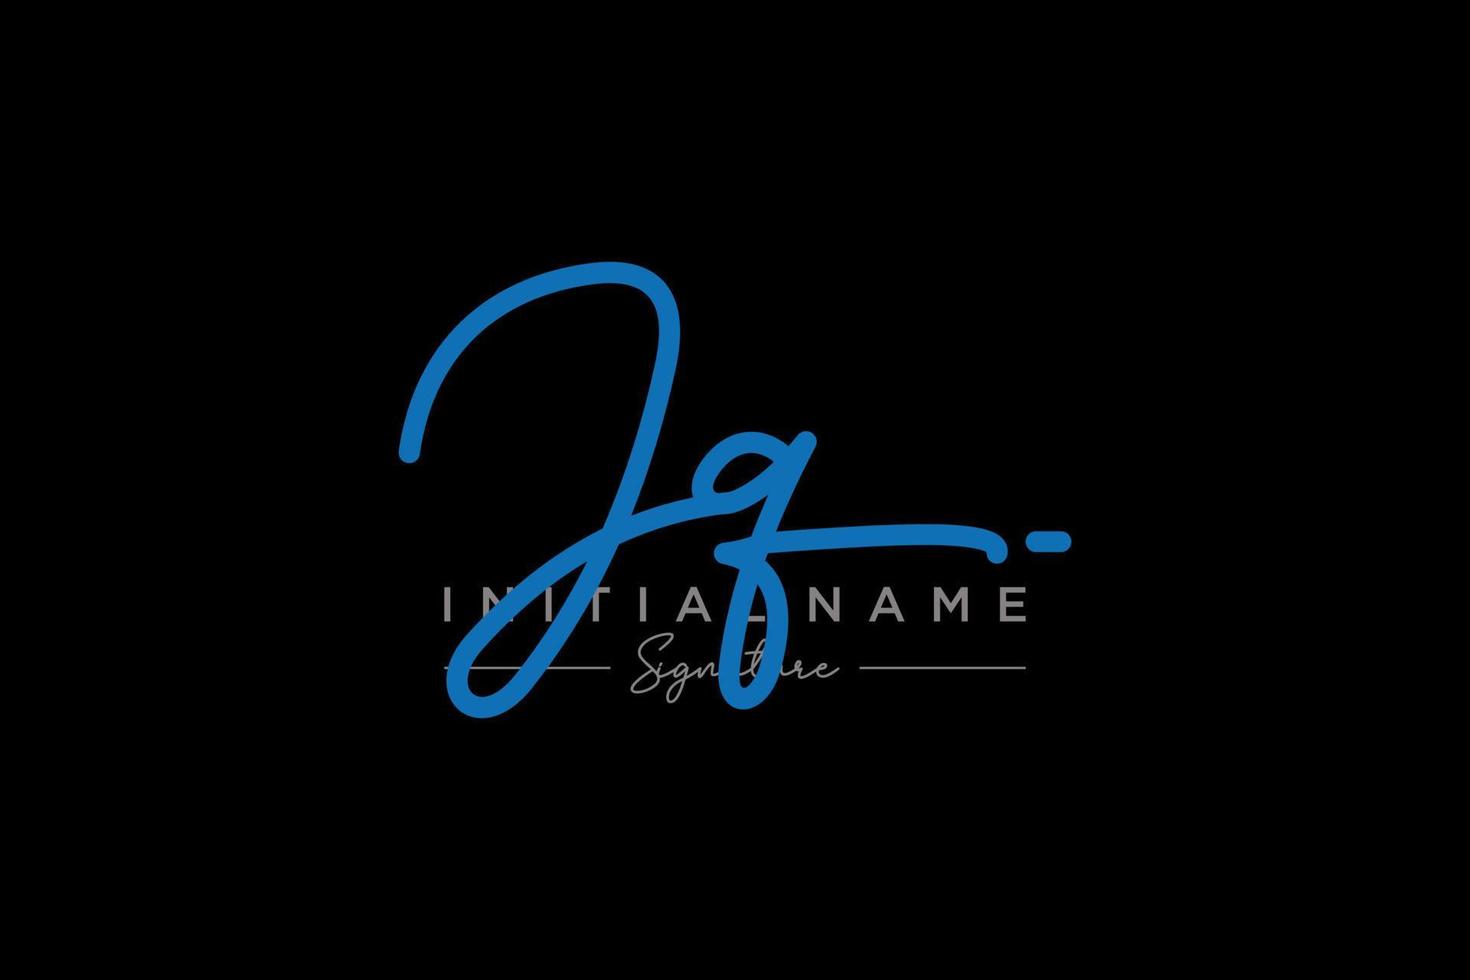 vector de plantilla de logotipo de firma jq inicial. ilustración de vector de letras de caligrafía dibujada a mano.